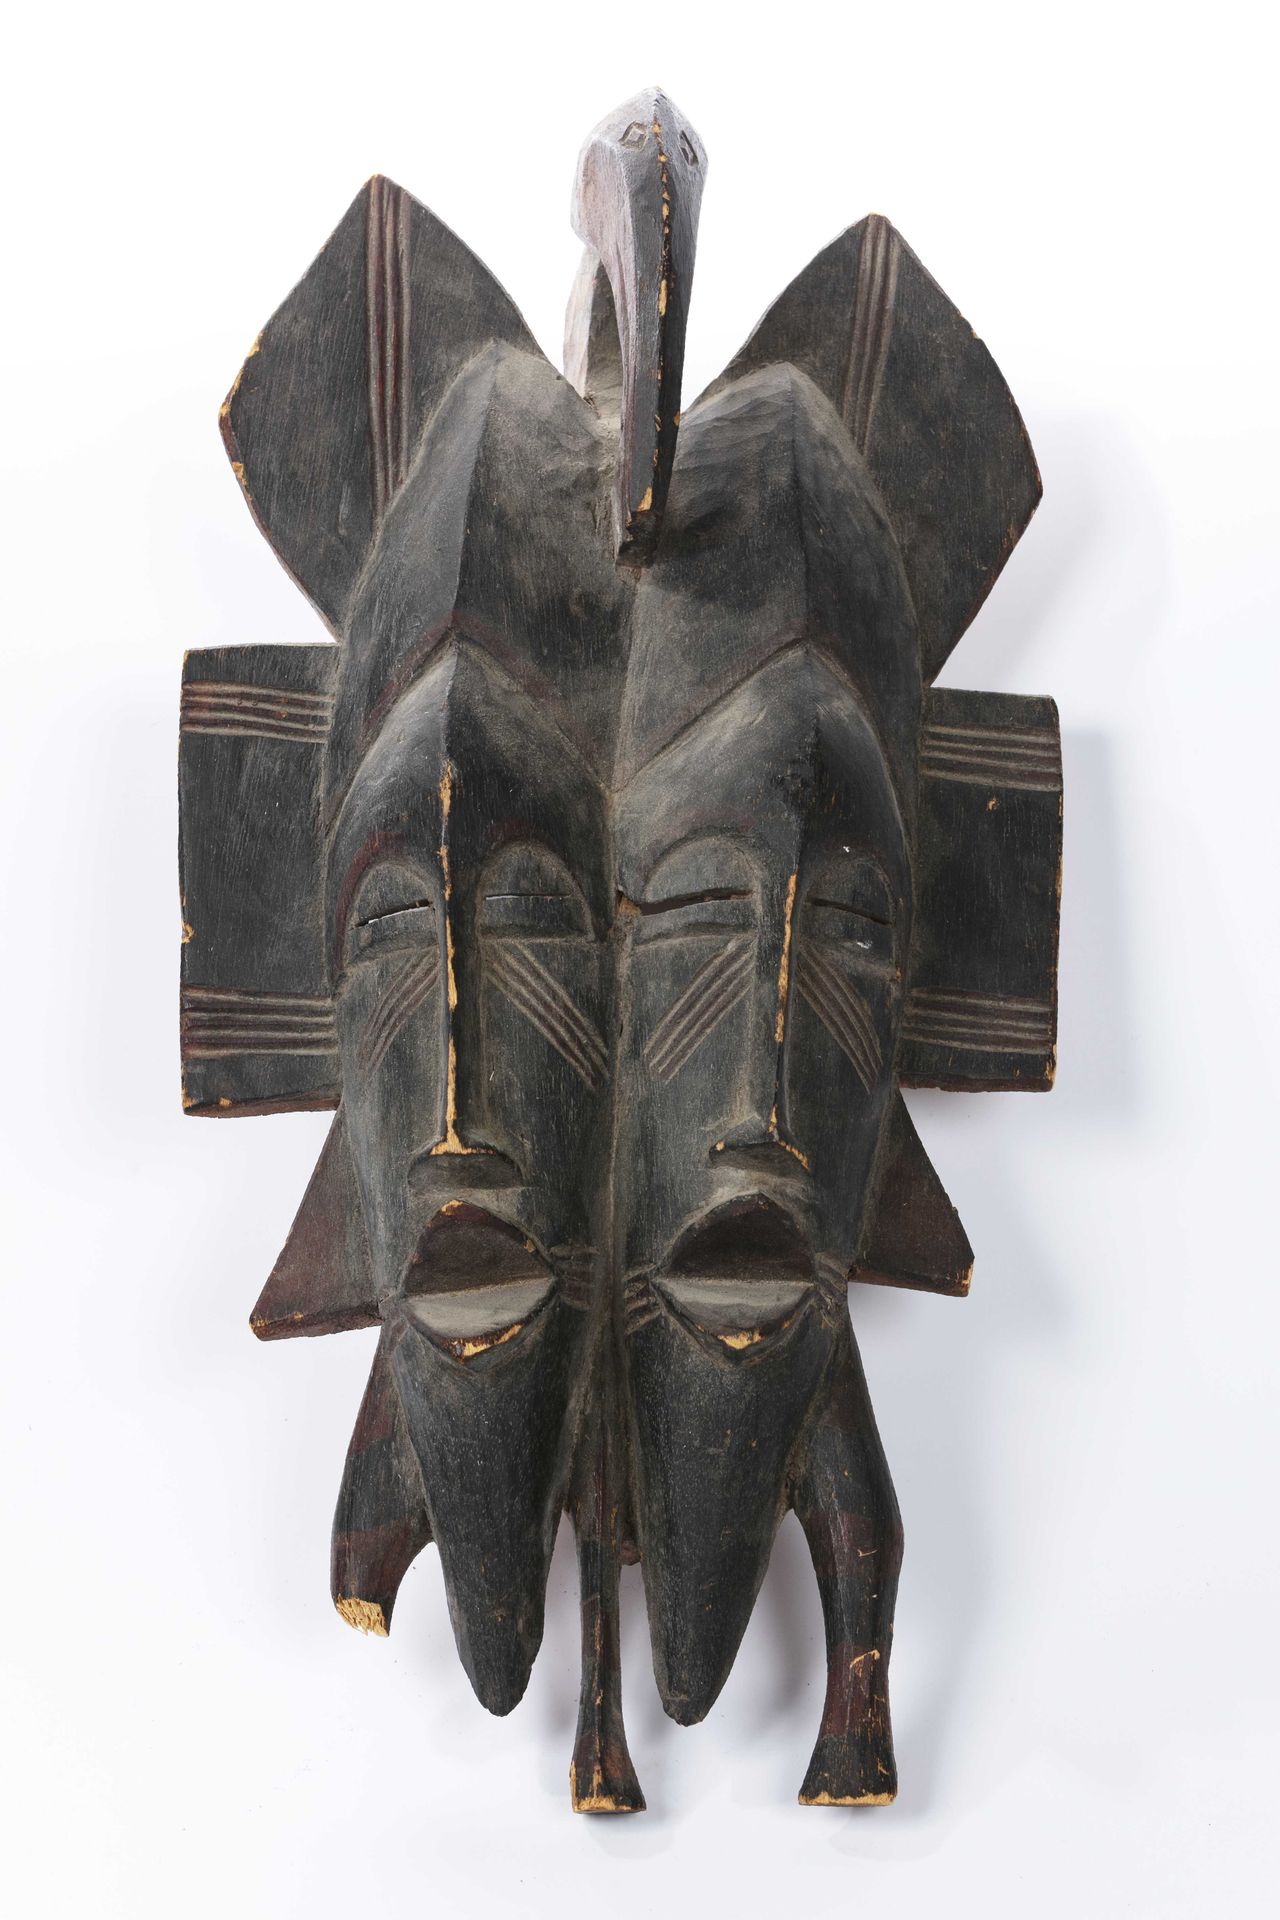 Null Máscara de estilo Kpelye, Senoufo, Costa de Marfil 
Madera 
Altura: 50 cm 
&hellip;